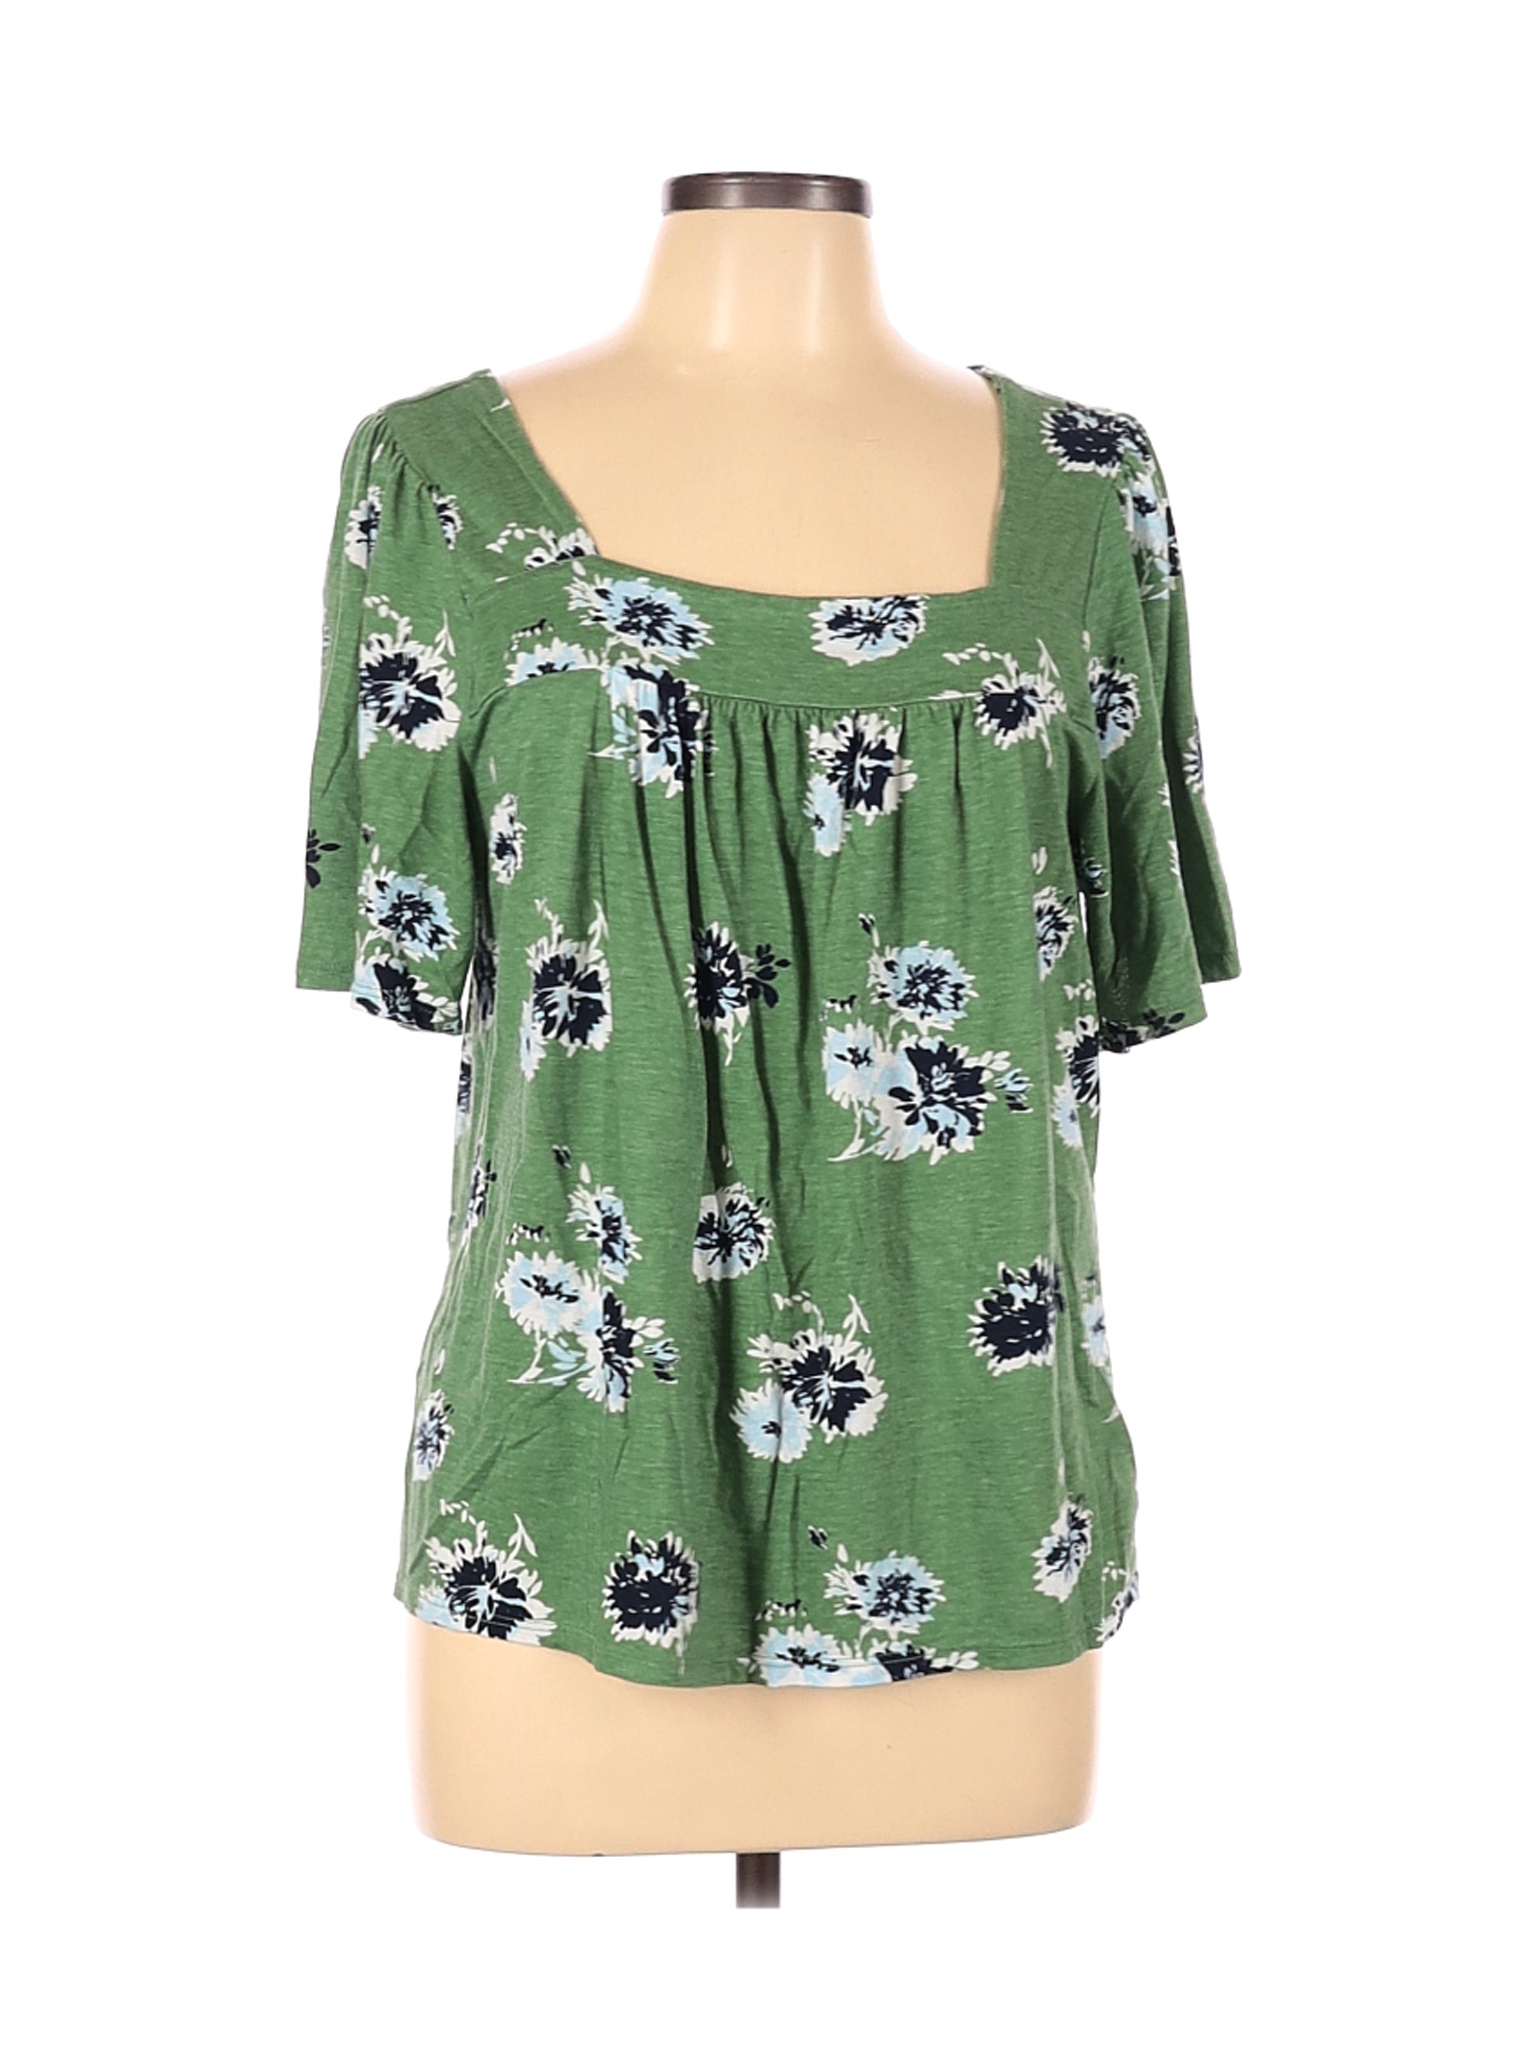 Lucky Brand Women Green Short Sleeve Top XL | eBay